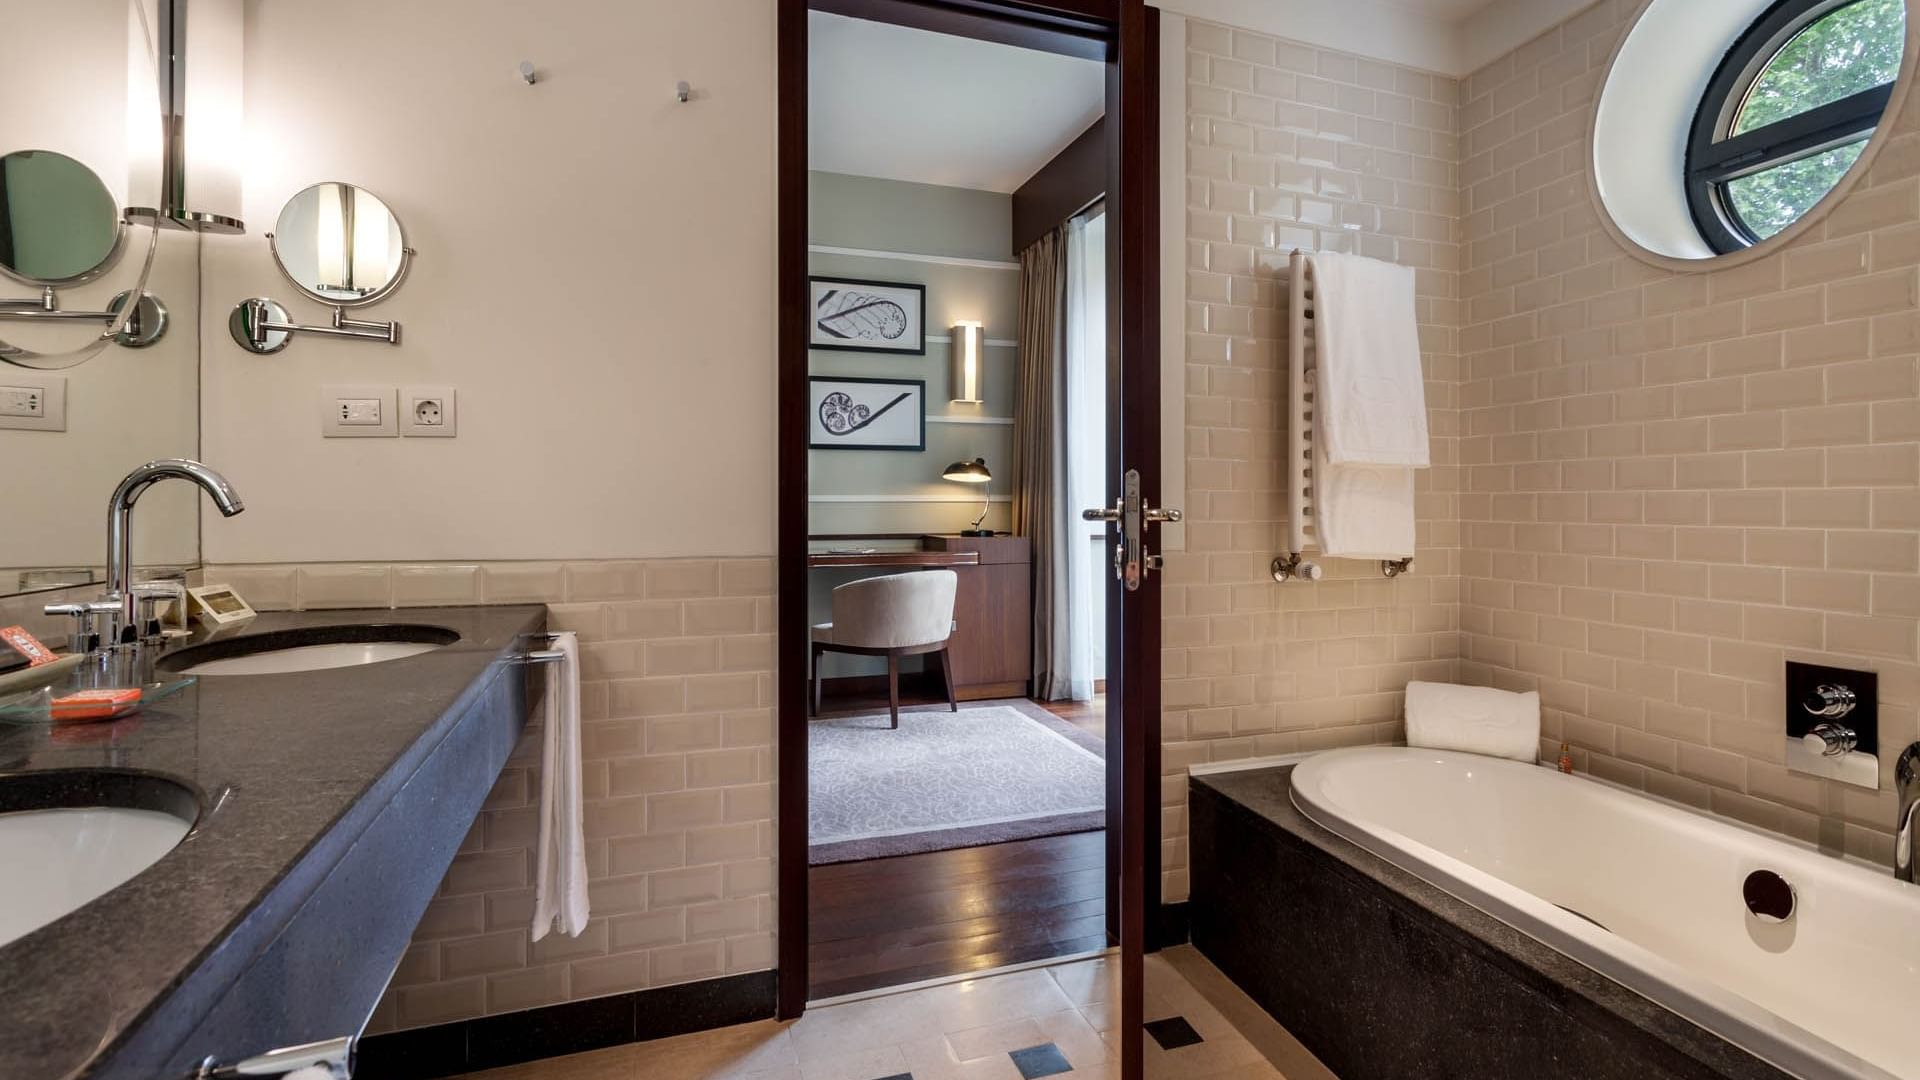 Bathroom & view of adjacent room 
at Bensaude Hotels